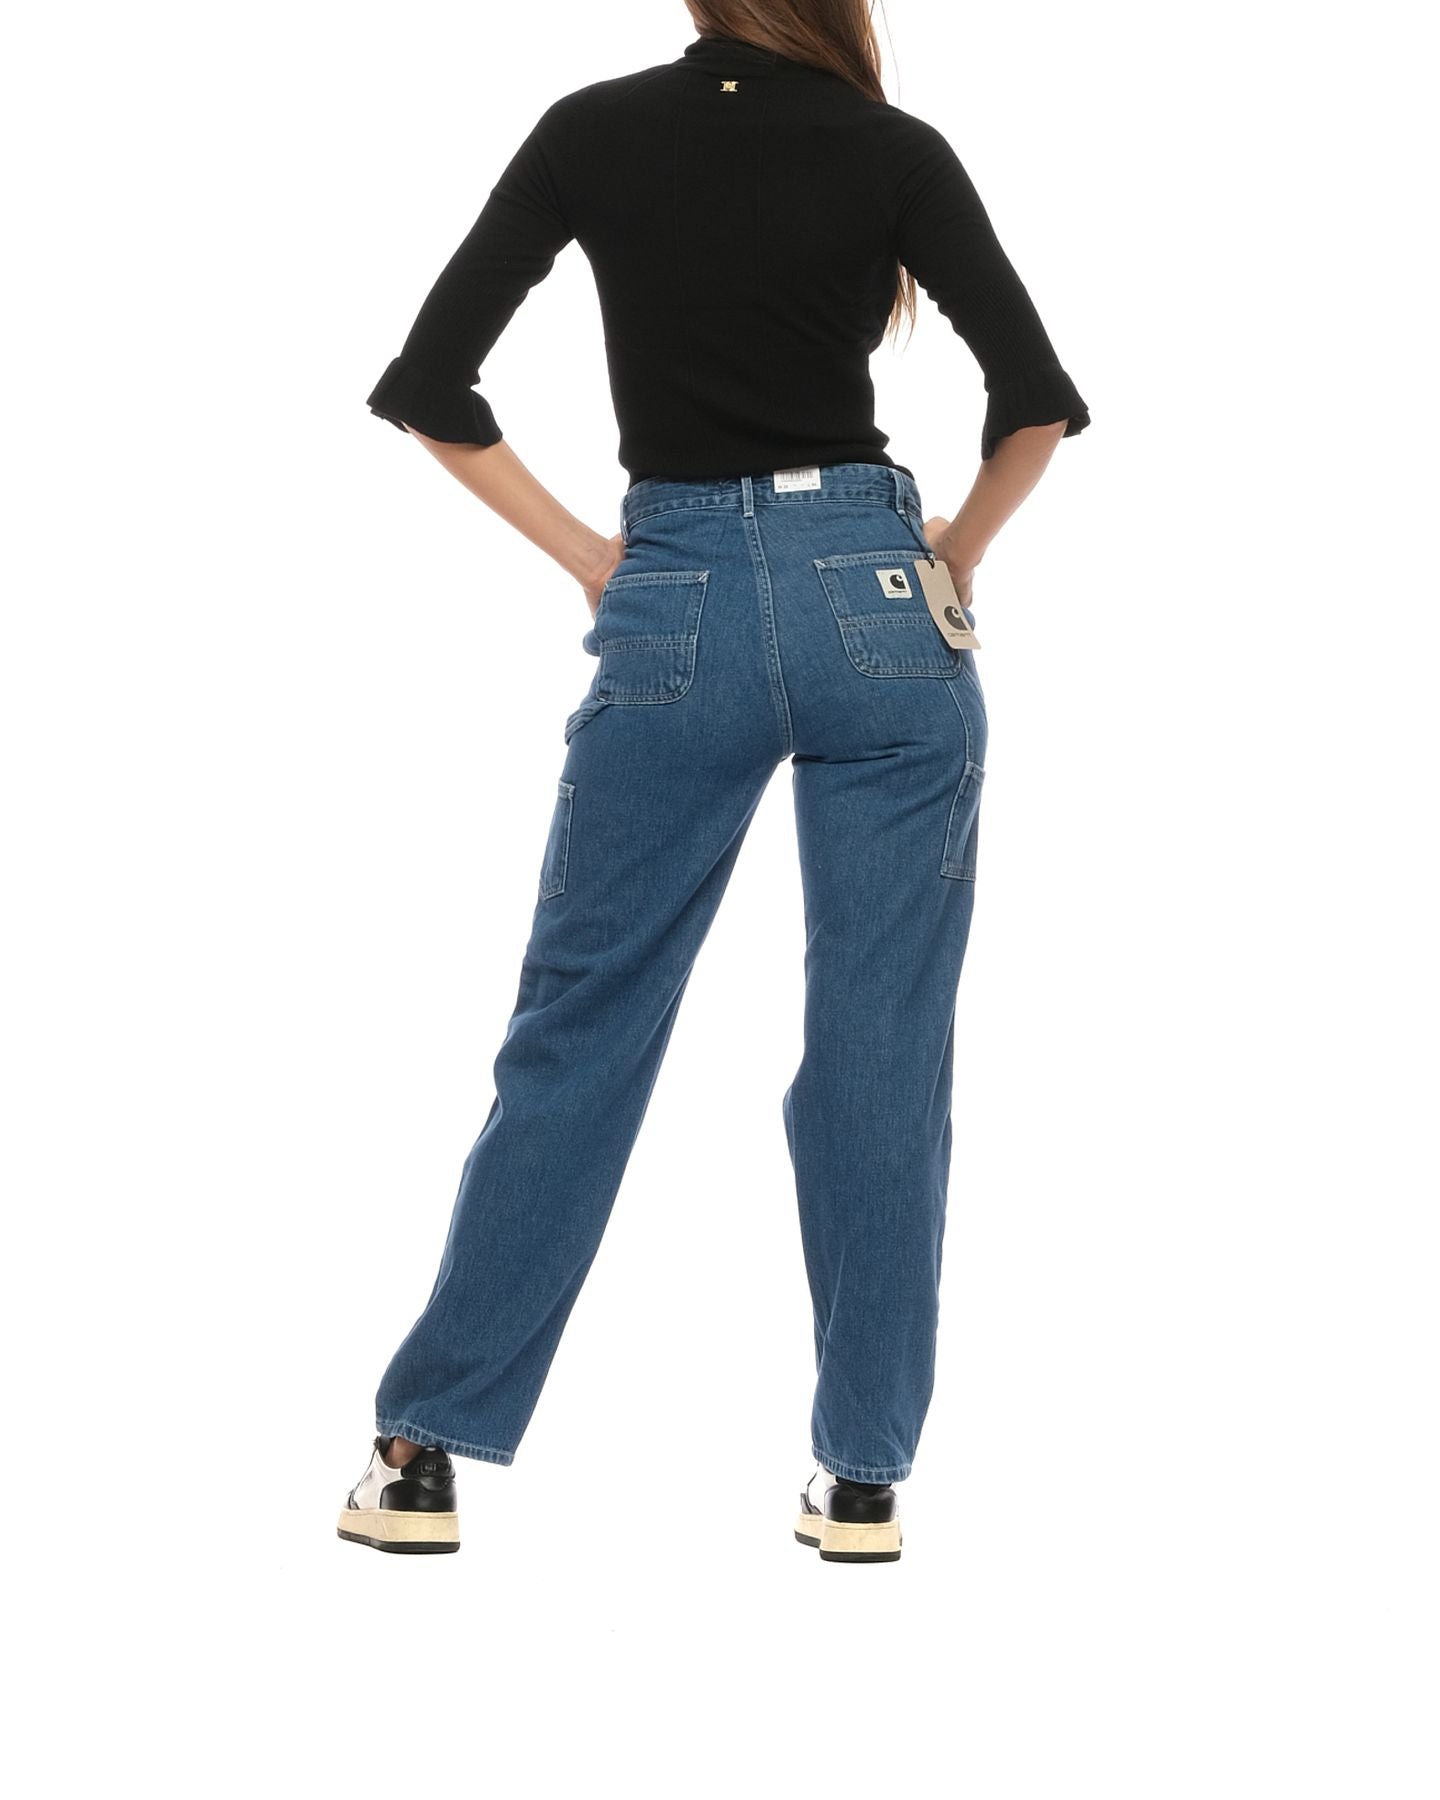 Jeans für Frau I031251 BLUE STONE WASHED CARHARTT WIP